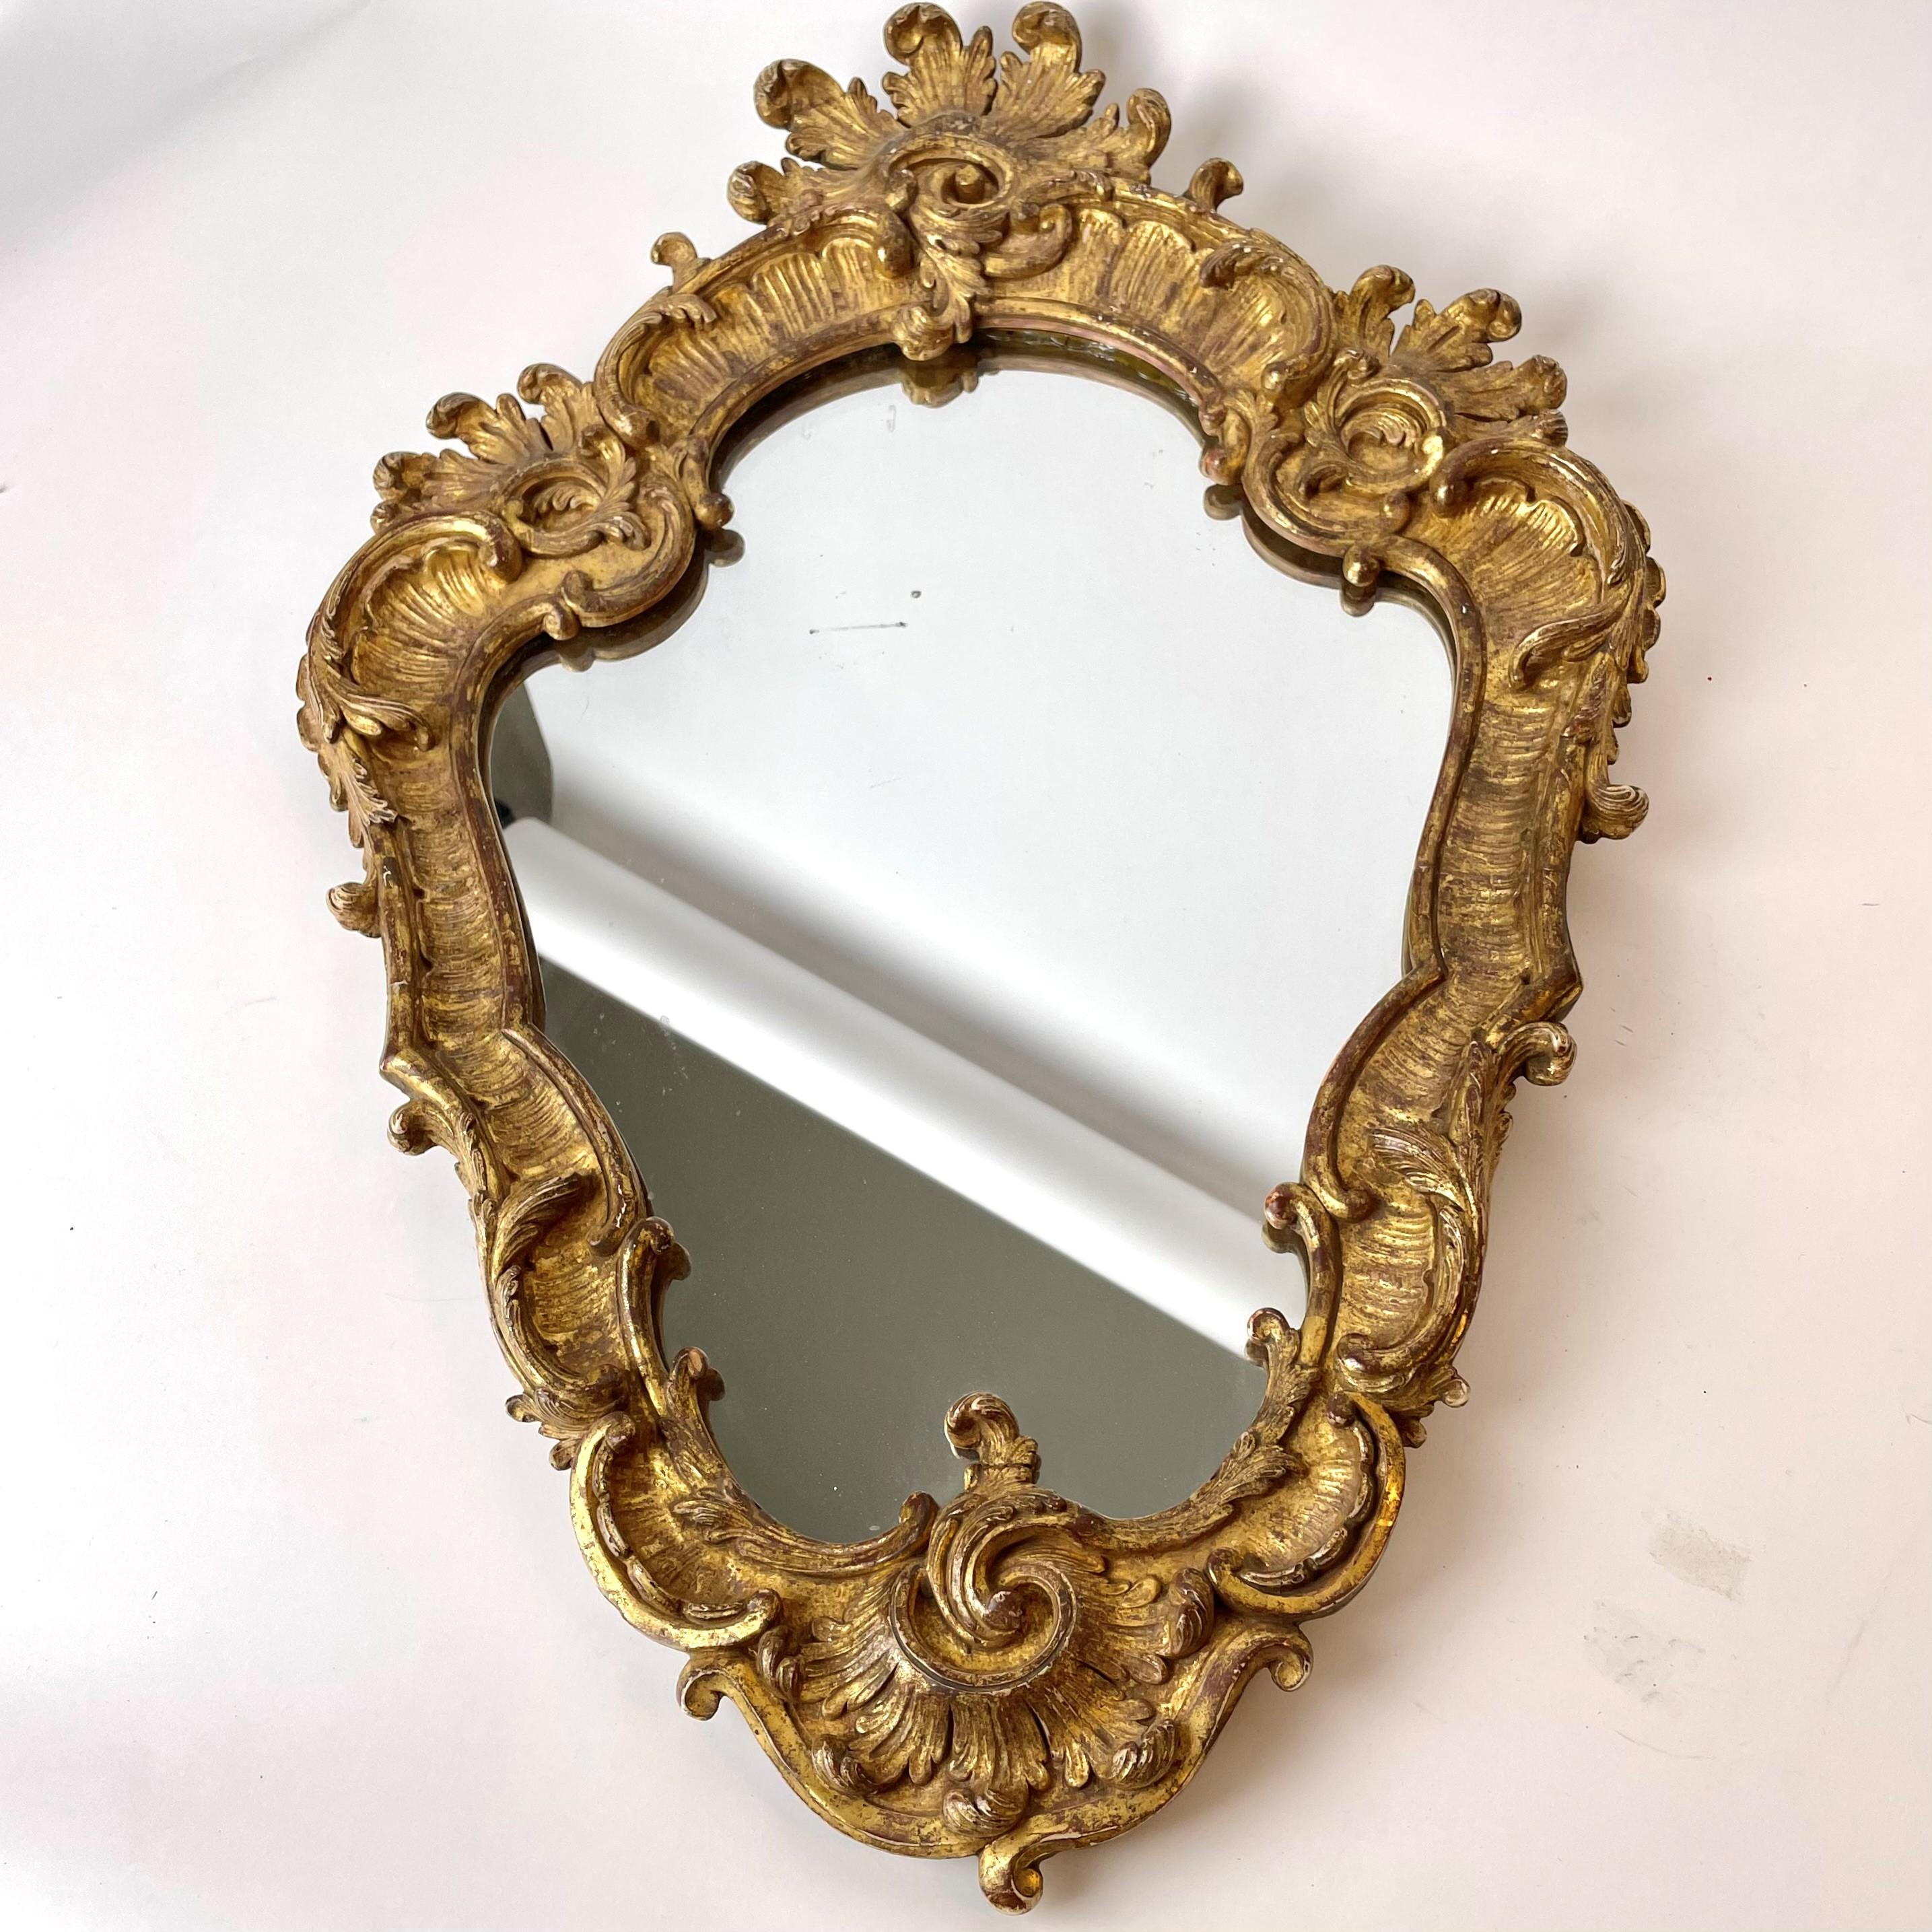 Sehr eleganter französischer Rokokospiegel mit Originalvergoldung. Wahrscheinlich um die Mitte des 18. Jahrhunderts in Paris, Frankreich, hergestellt.

Schöne Originalvergoldung mit schöner Patina. Das Spiegelglas ist wahrscheinlich ebenfalls